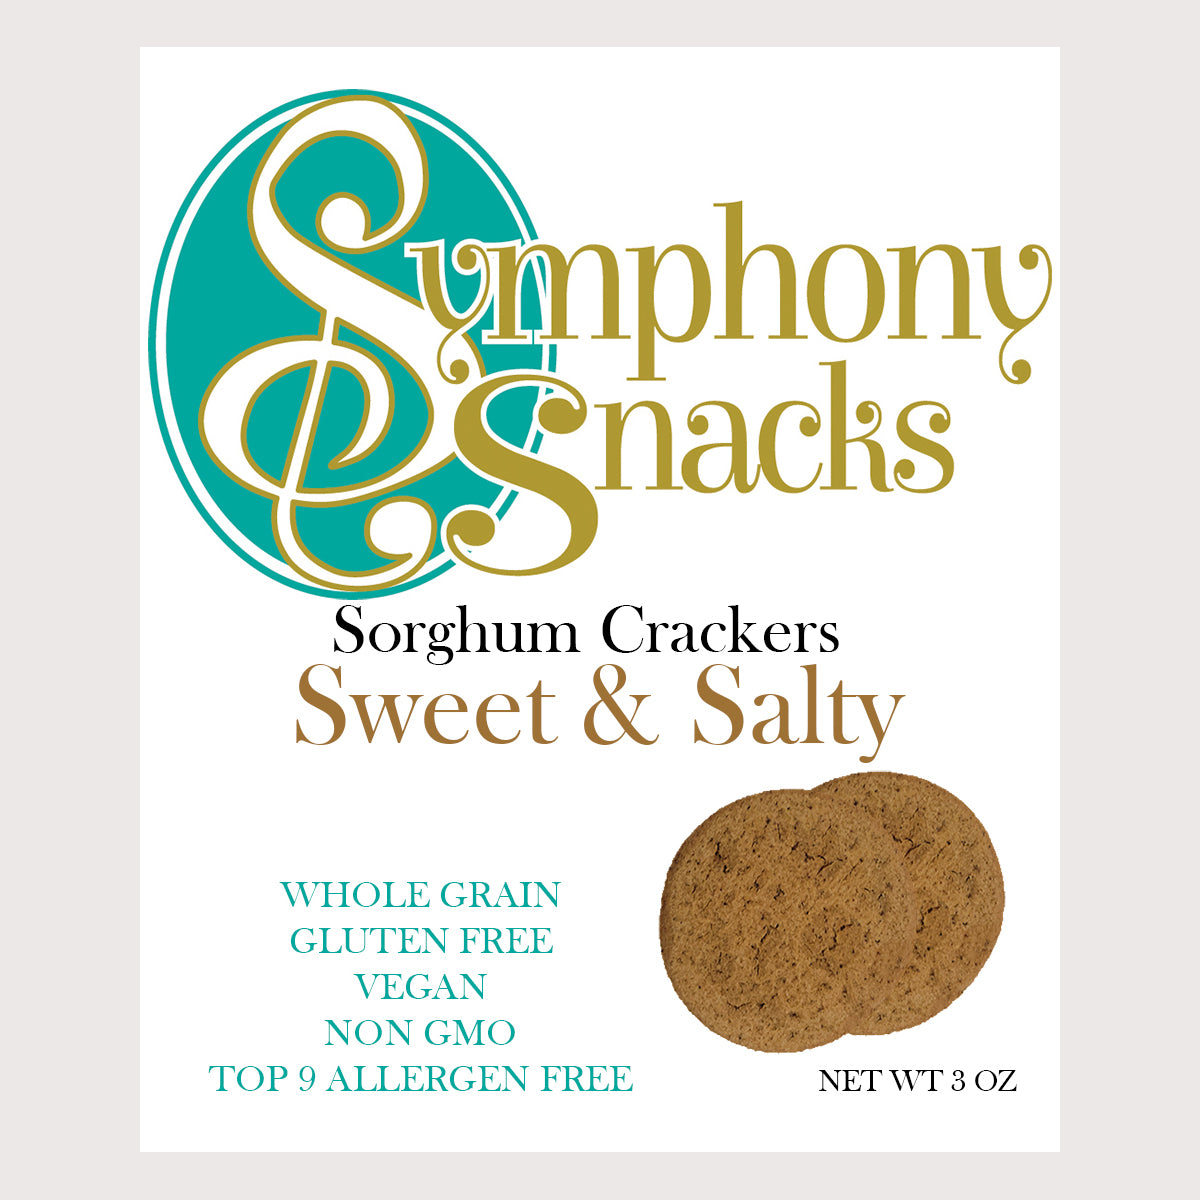 Sweet & Salty Sorghum Crackers